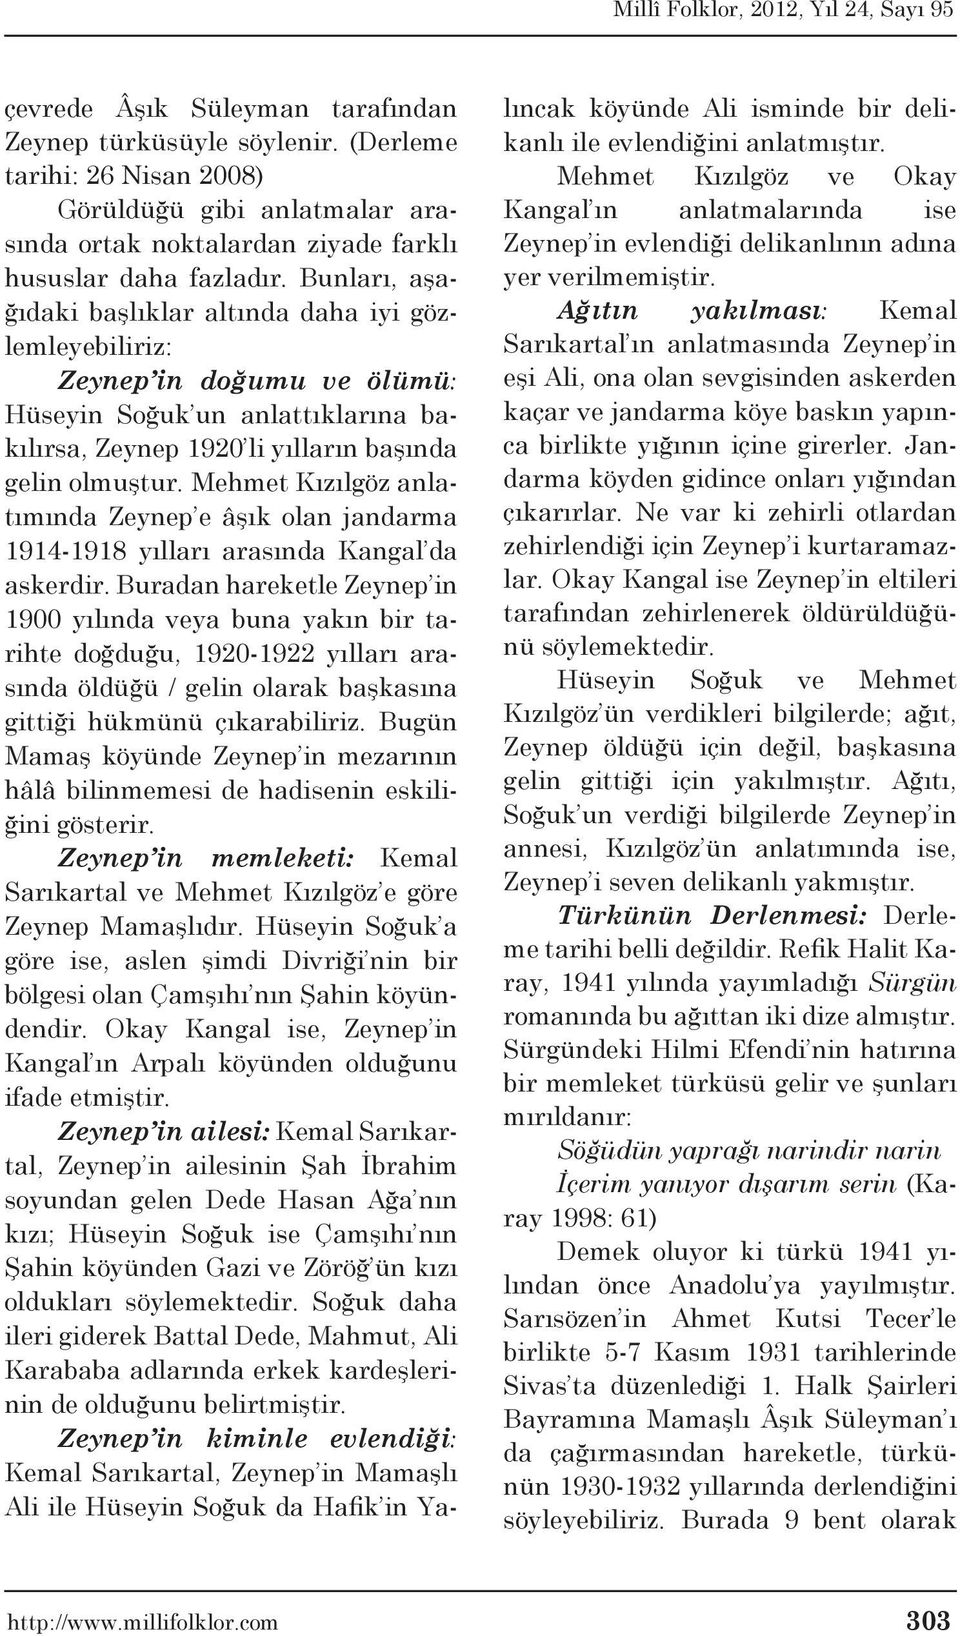 Mehmet Kızılgöz anlatımında Zeynep e âşık olan jandarma 1914-1918 yılları arasında Kangal da askerdir.